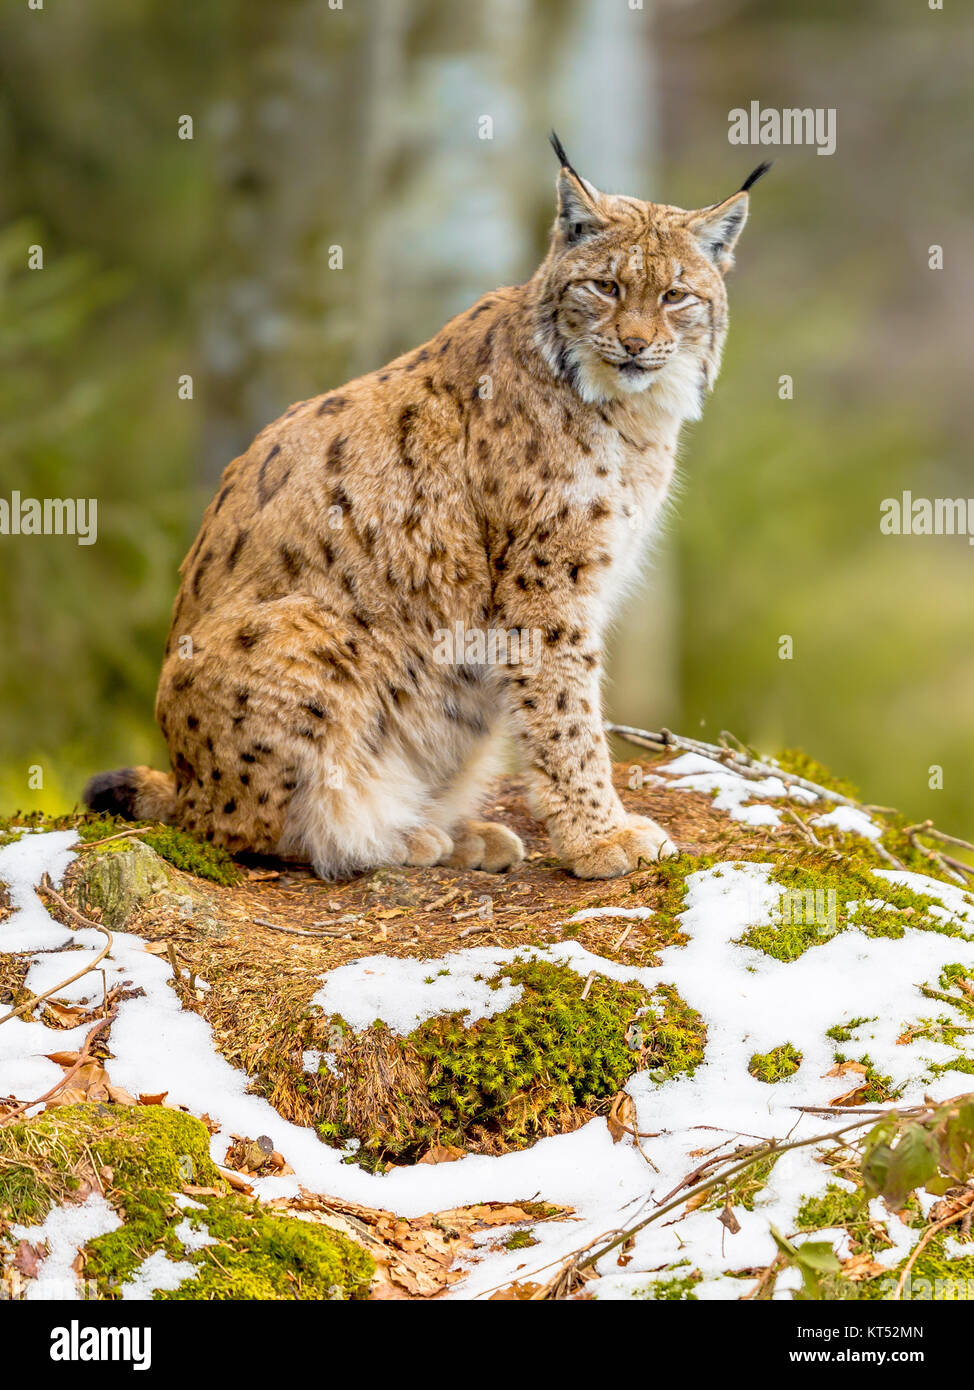 La euroasiática de tamaño mediano (Lynx lynx) es nativo de Siberia, Central, Oriental y Meridional, Asia, América del Norte, Europa Central y Oriental. Descansando en winte Foto de stock